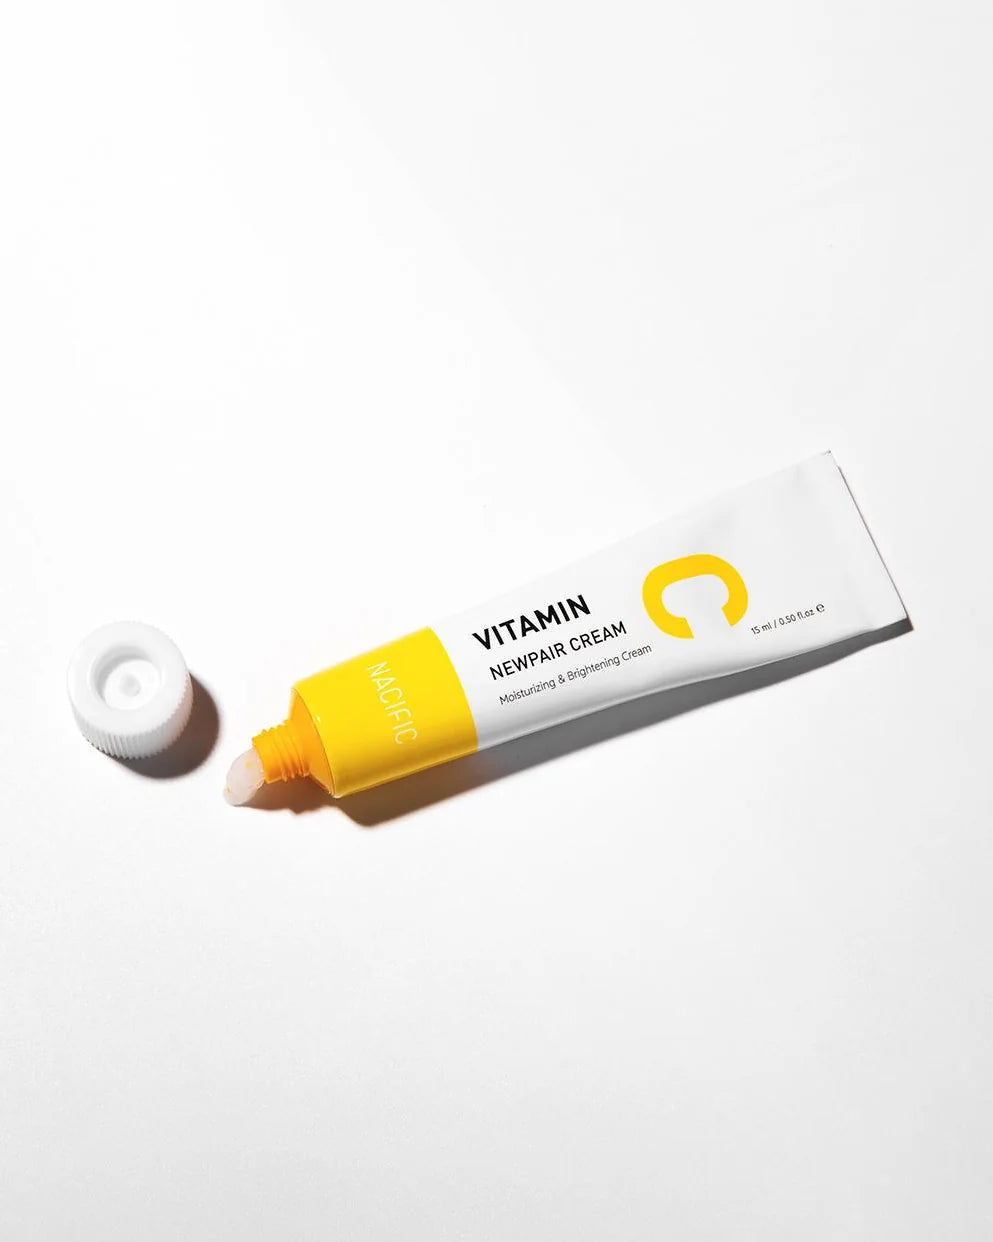 Nacific Vitamin C Newpair Cream